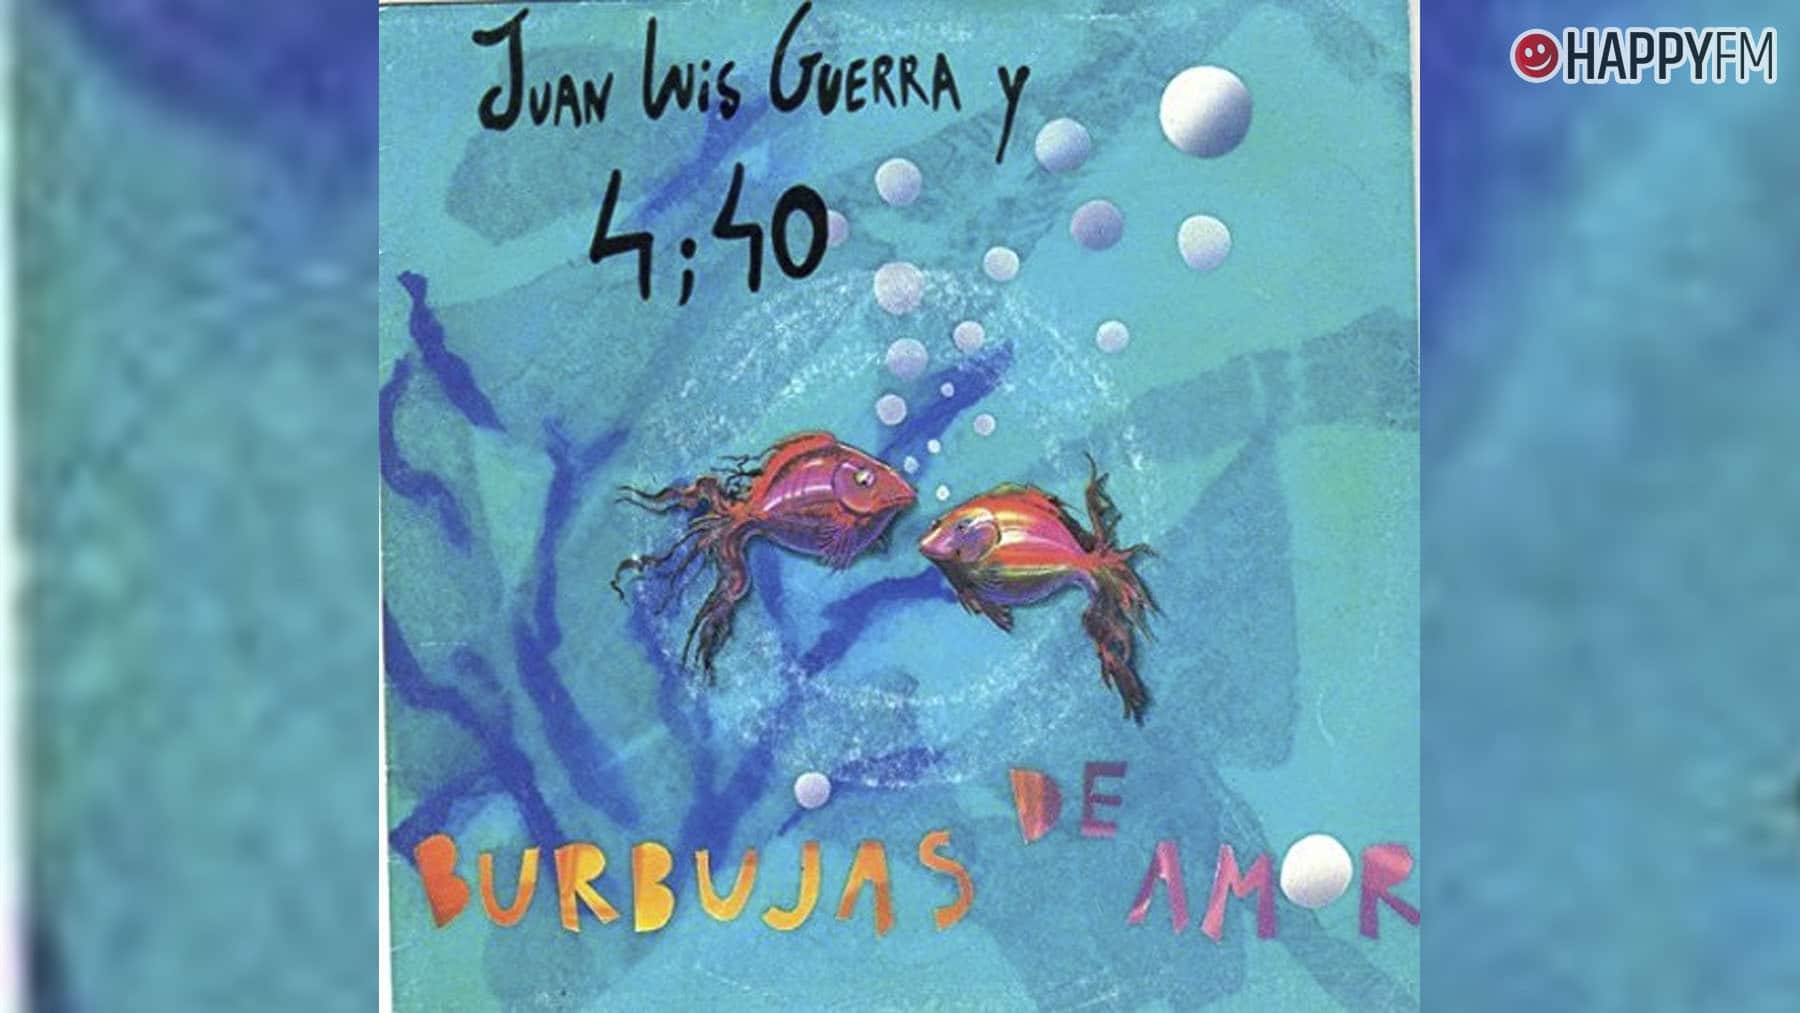 ‘Burbujas de amor’, de Juan Luis Guerra: letra, historia y vídeo